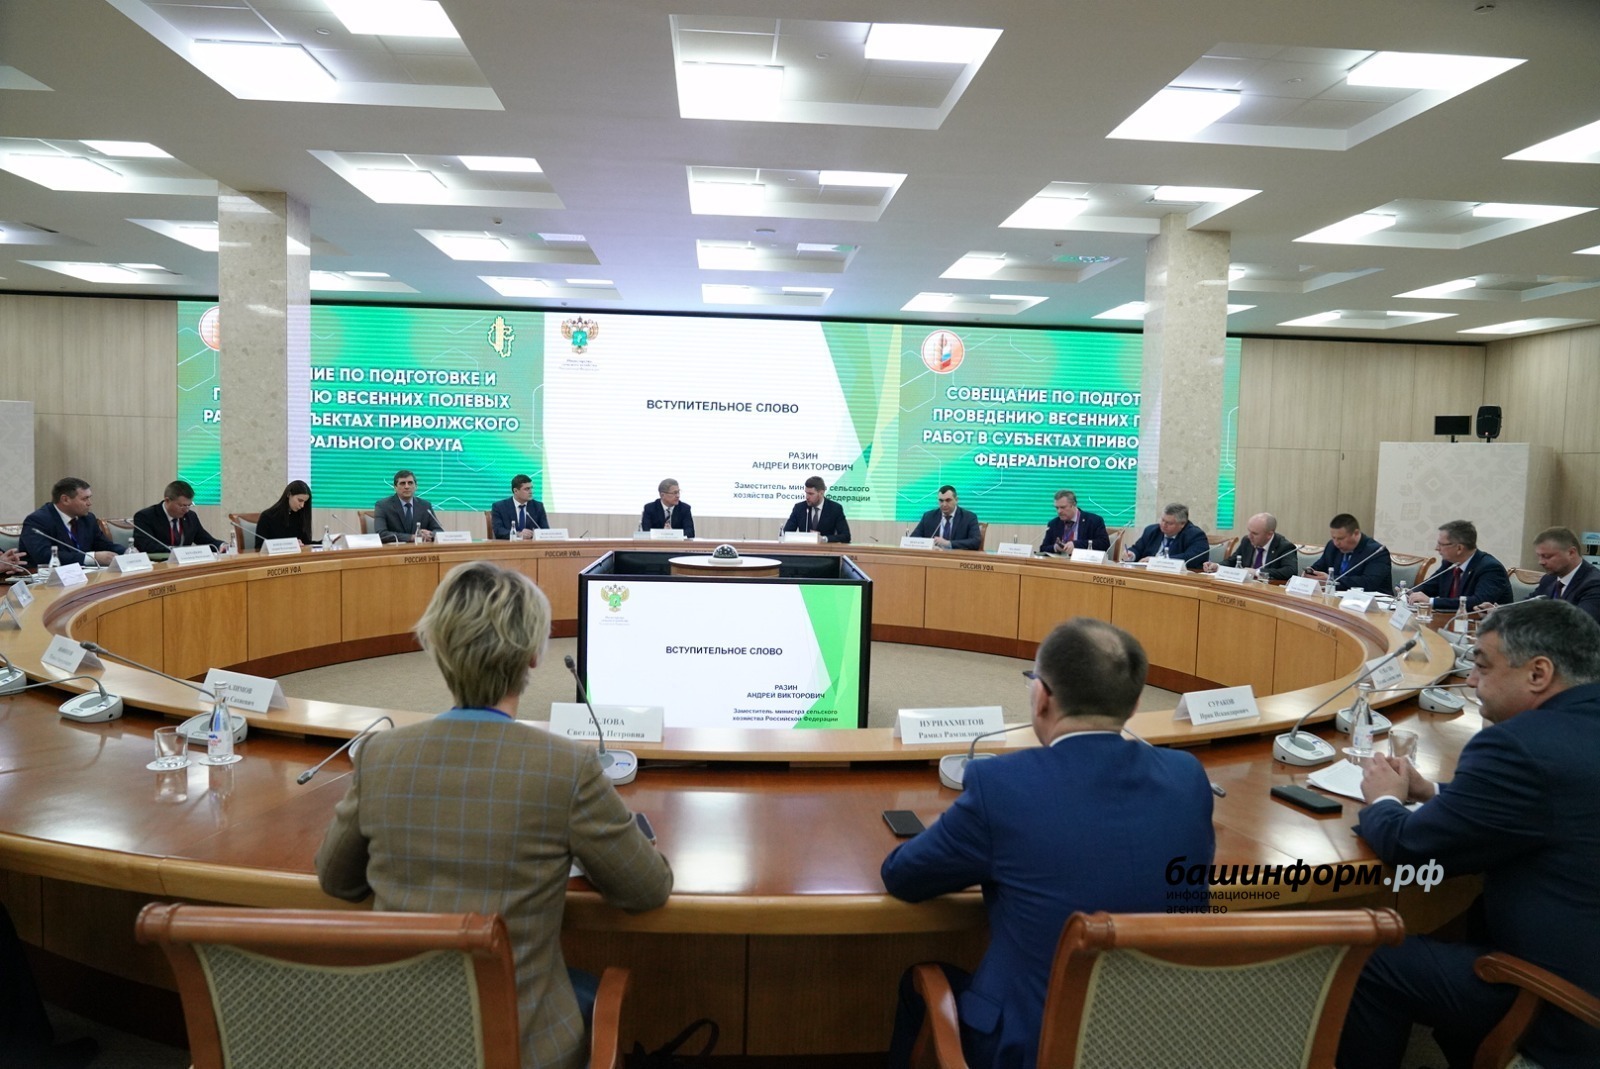 Глава Башкортостана Радий Хабиров обозначил ключевые направления агропромышленной политики республики